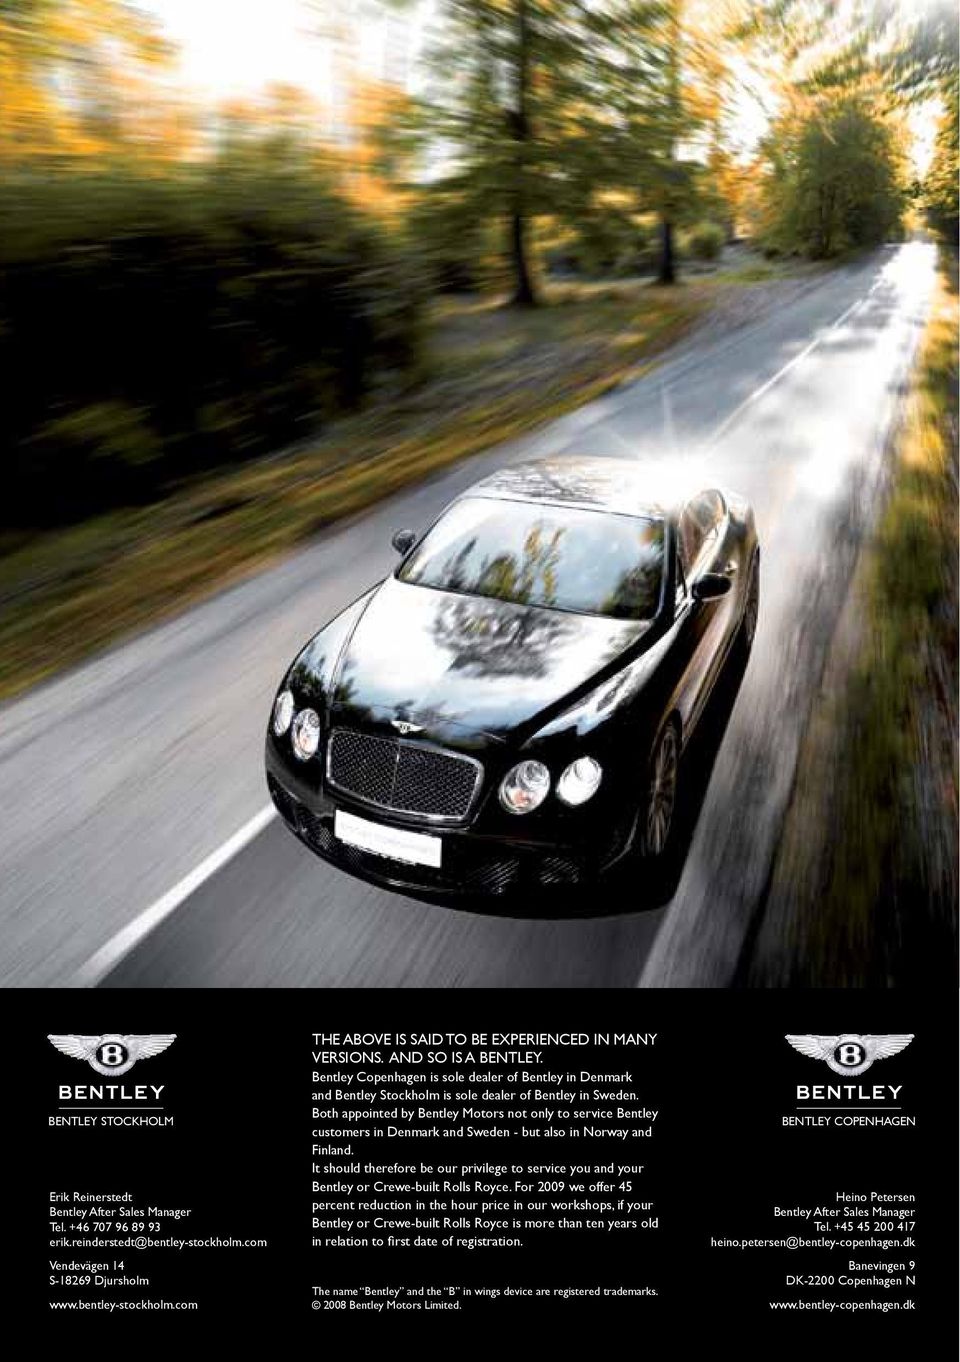 Bentley Copenhagen is sole dealer of Bentley in Denmark and Bentley Stockholm is sole dealer of Bentley in Sweden.